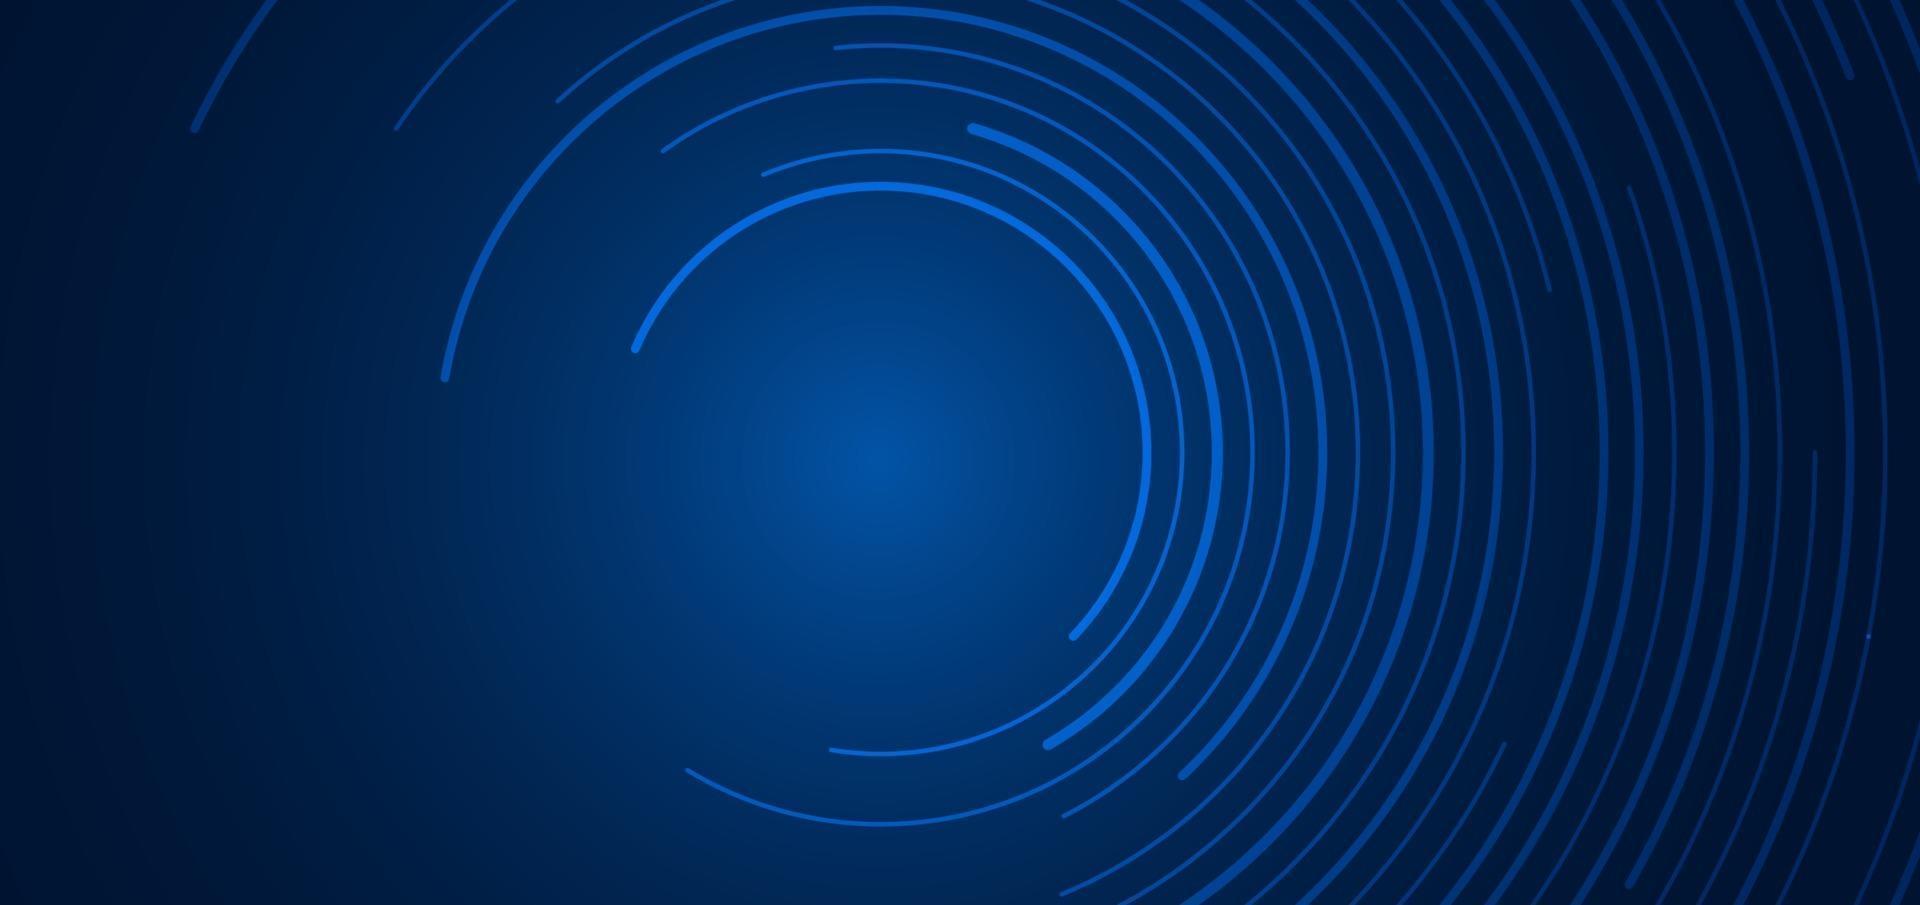 abstracte technologie futuristische concept blauwe cirkelvormige lijnen banner ontwerp verbinding vector